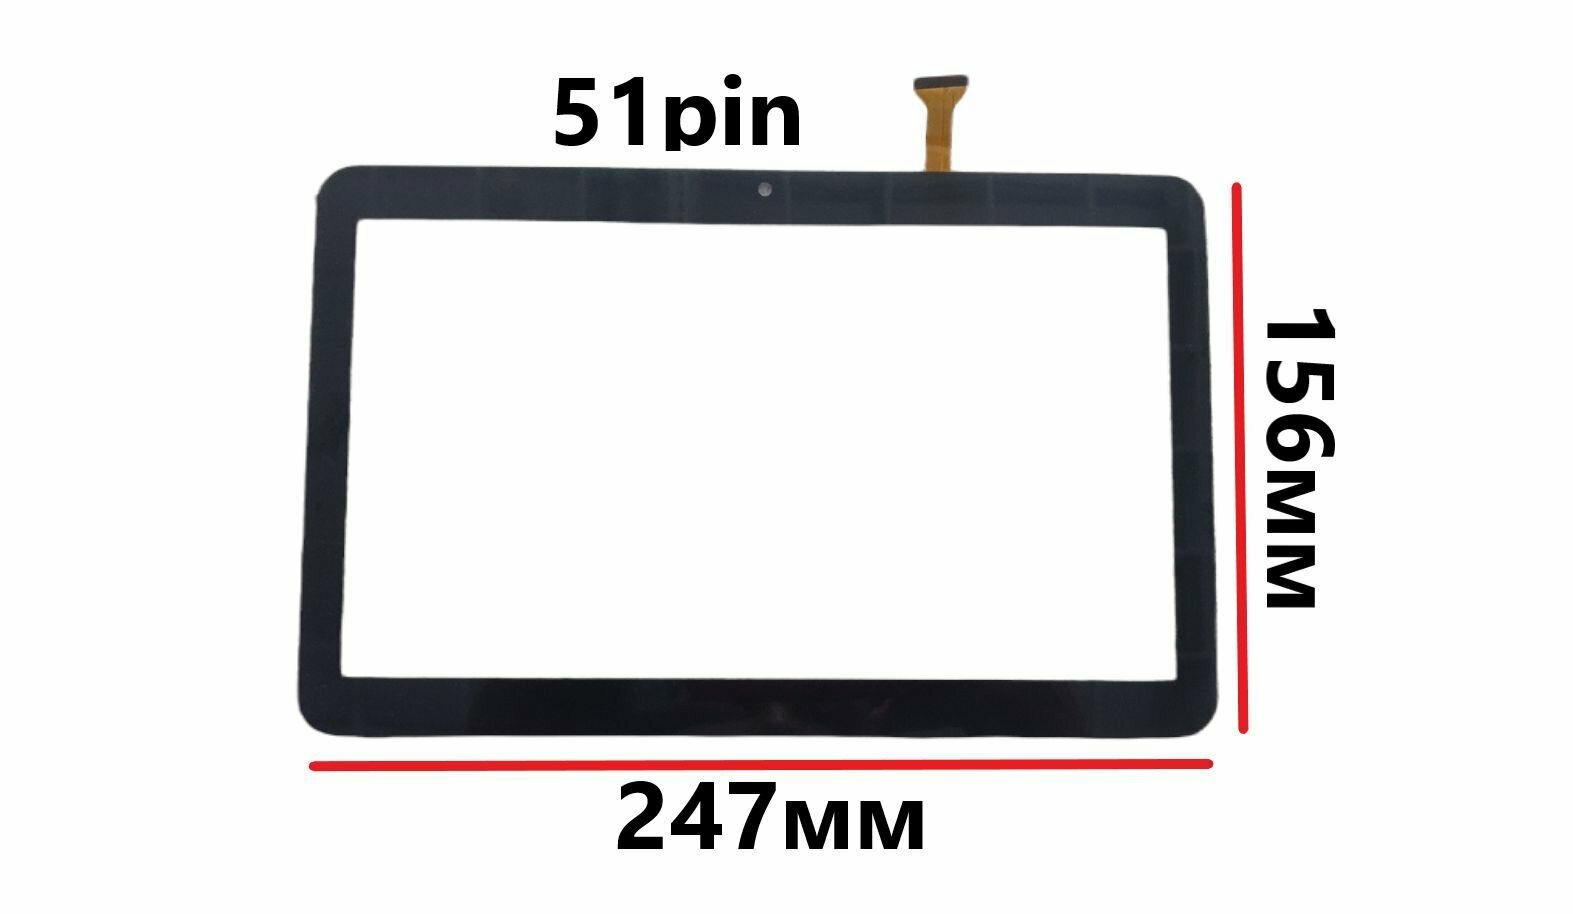 Тачскрин (сенсорное стекло) для планшета Irbis TZ141 3G